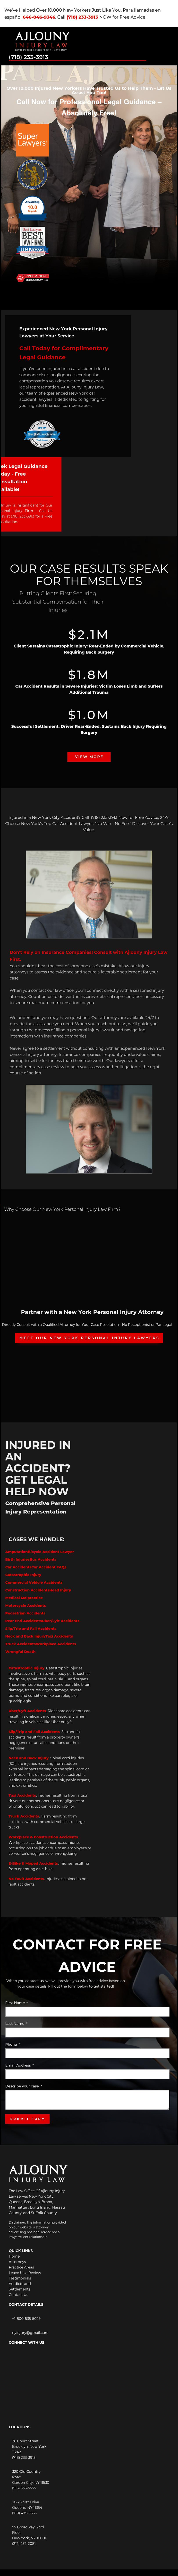 Ajlouny Injury Law - Garden City NY Lawyers